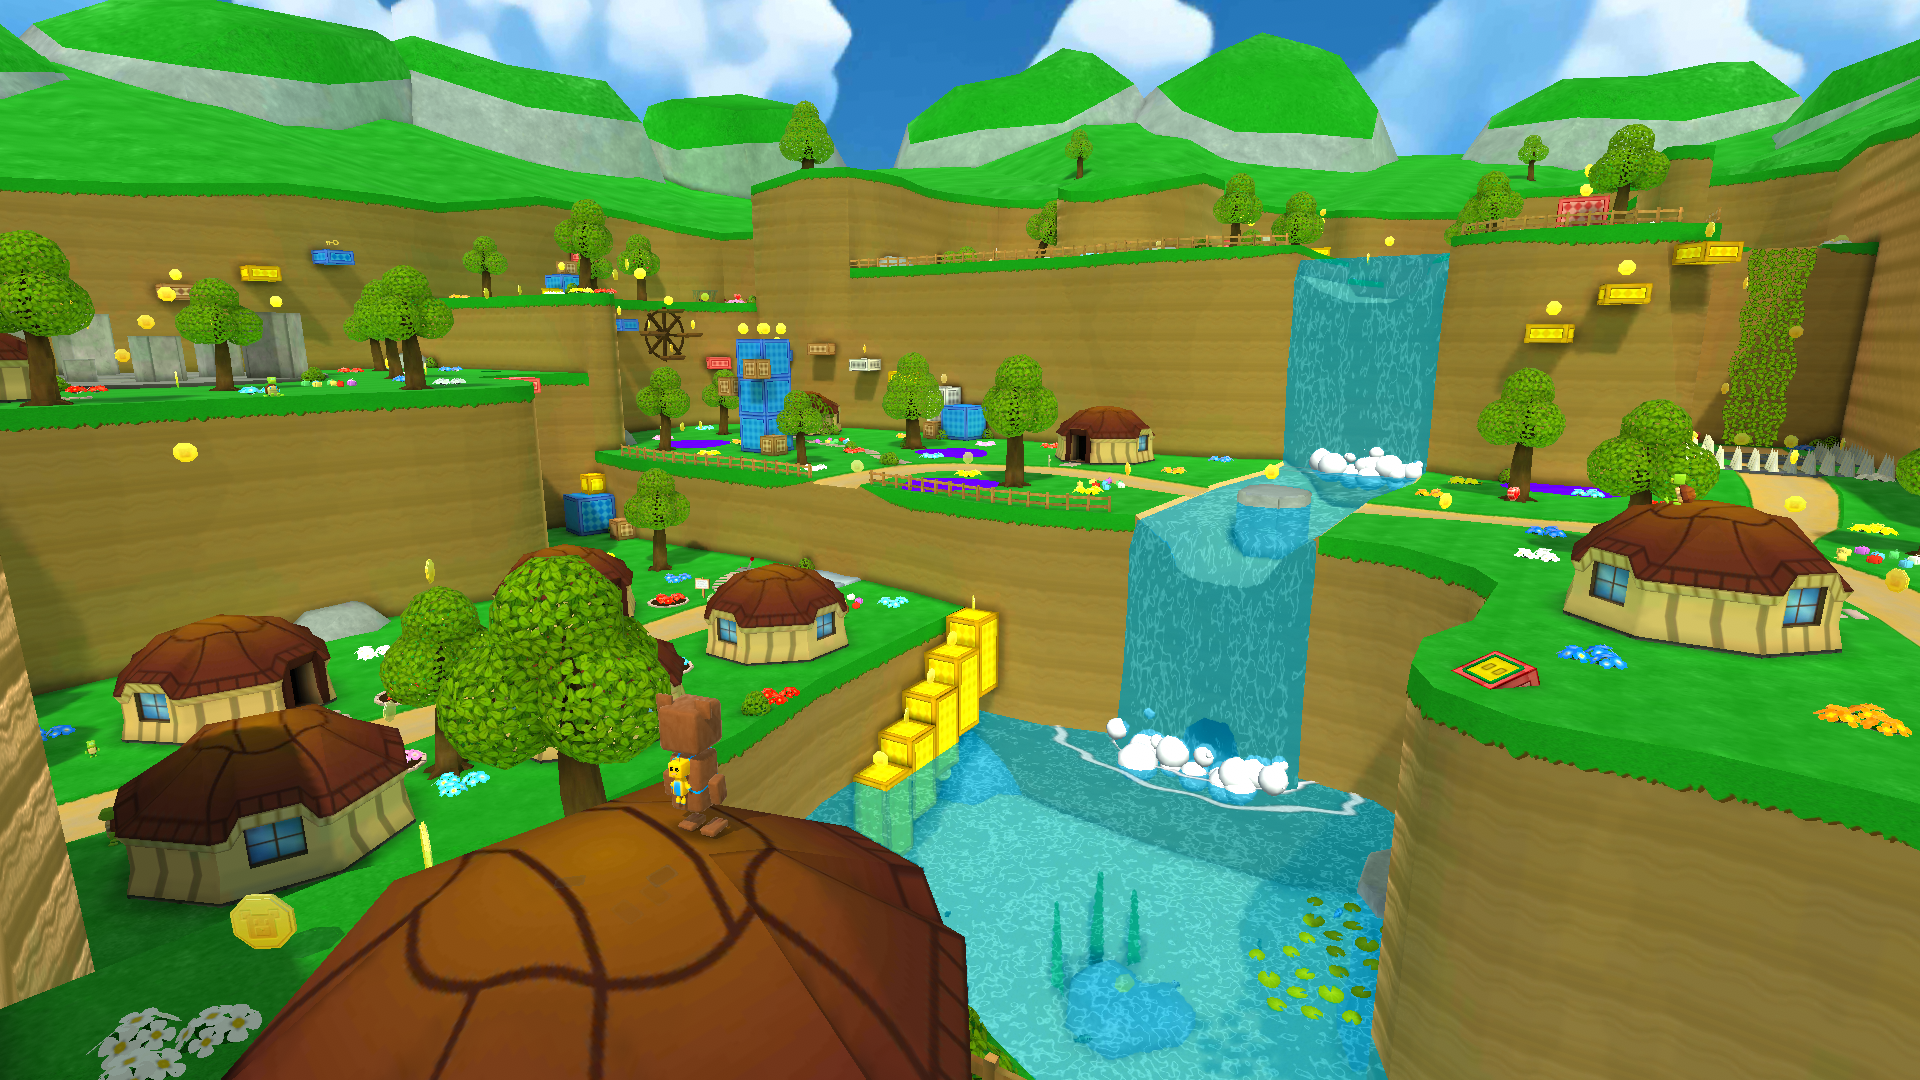 Super Bear Adventure - Gameplay Walkthrough Part 1 - Turtletown